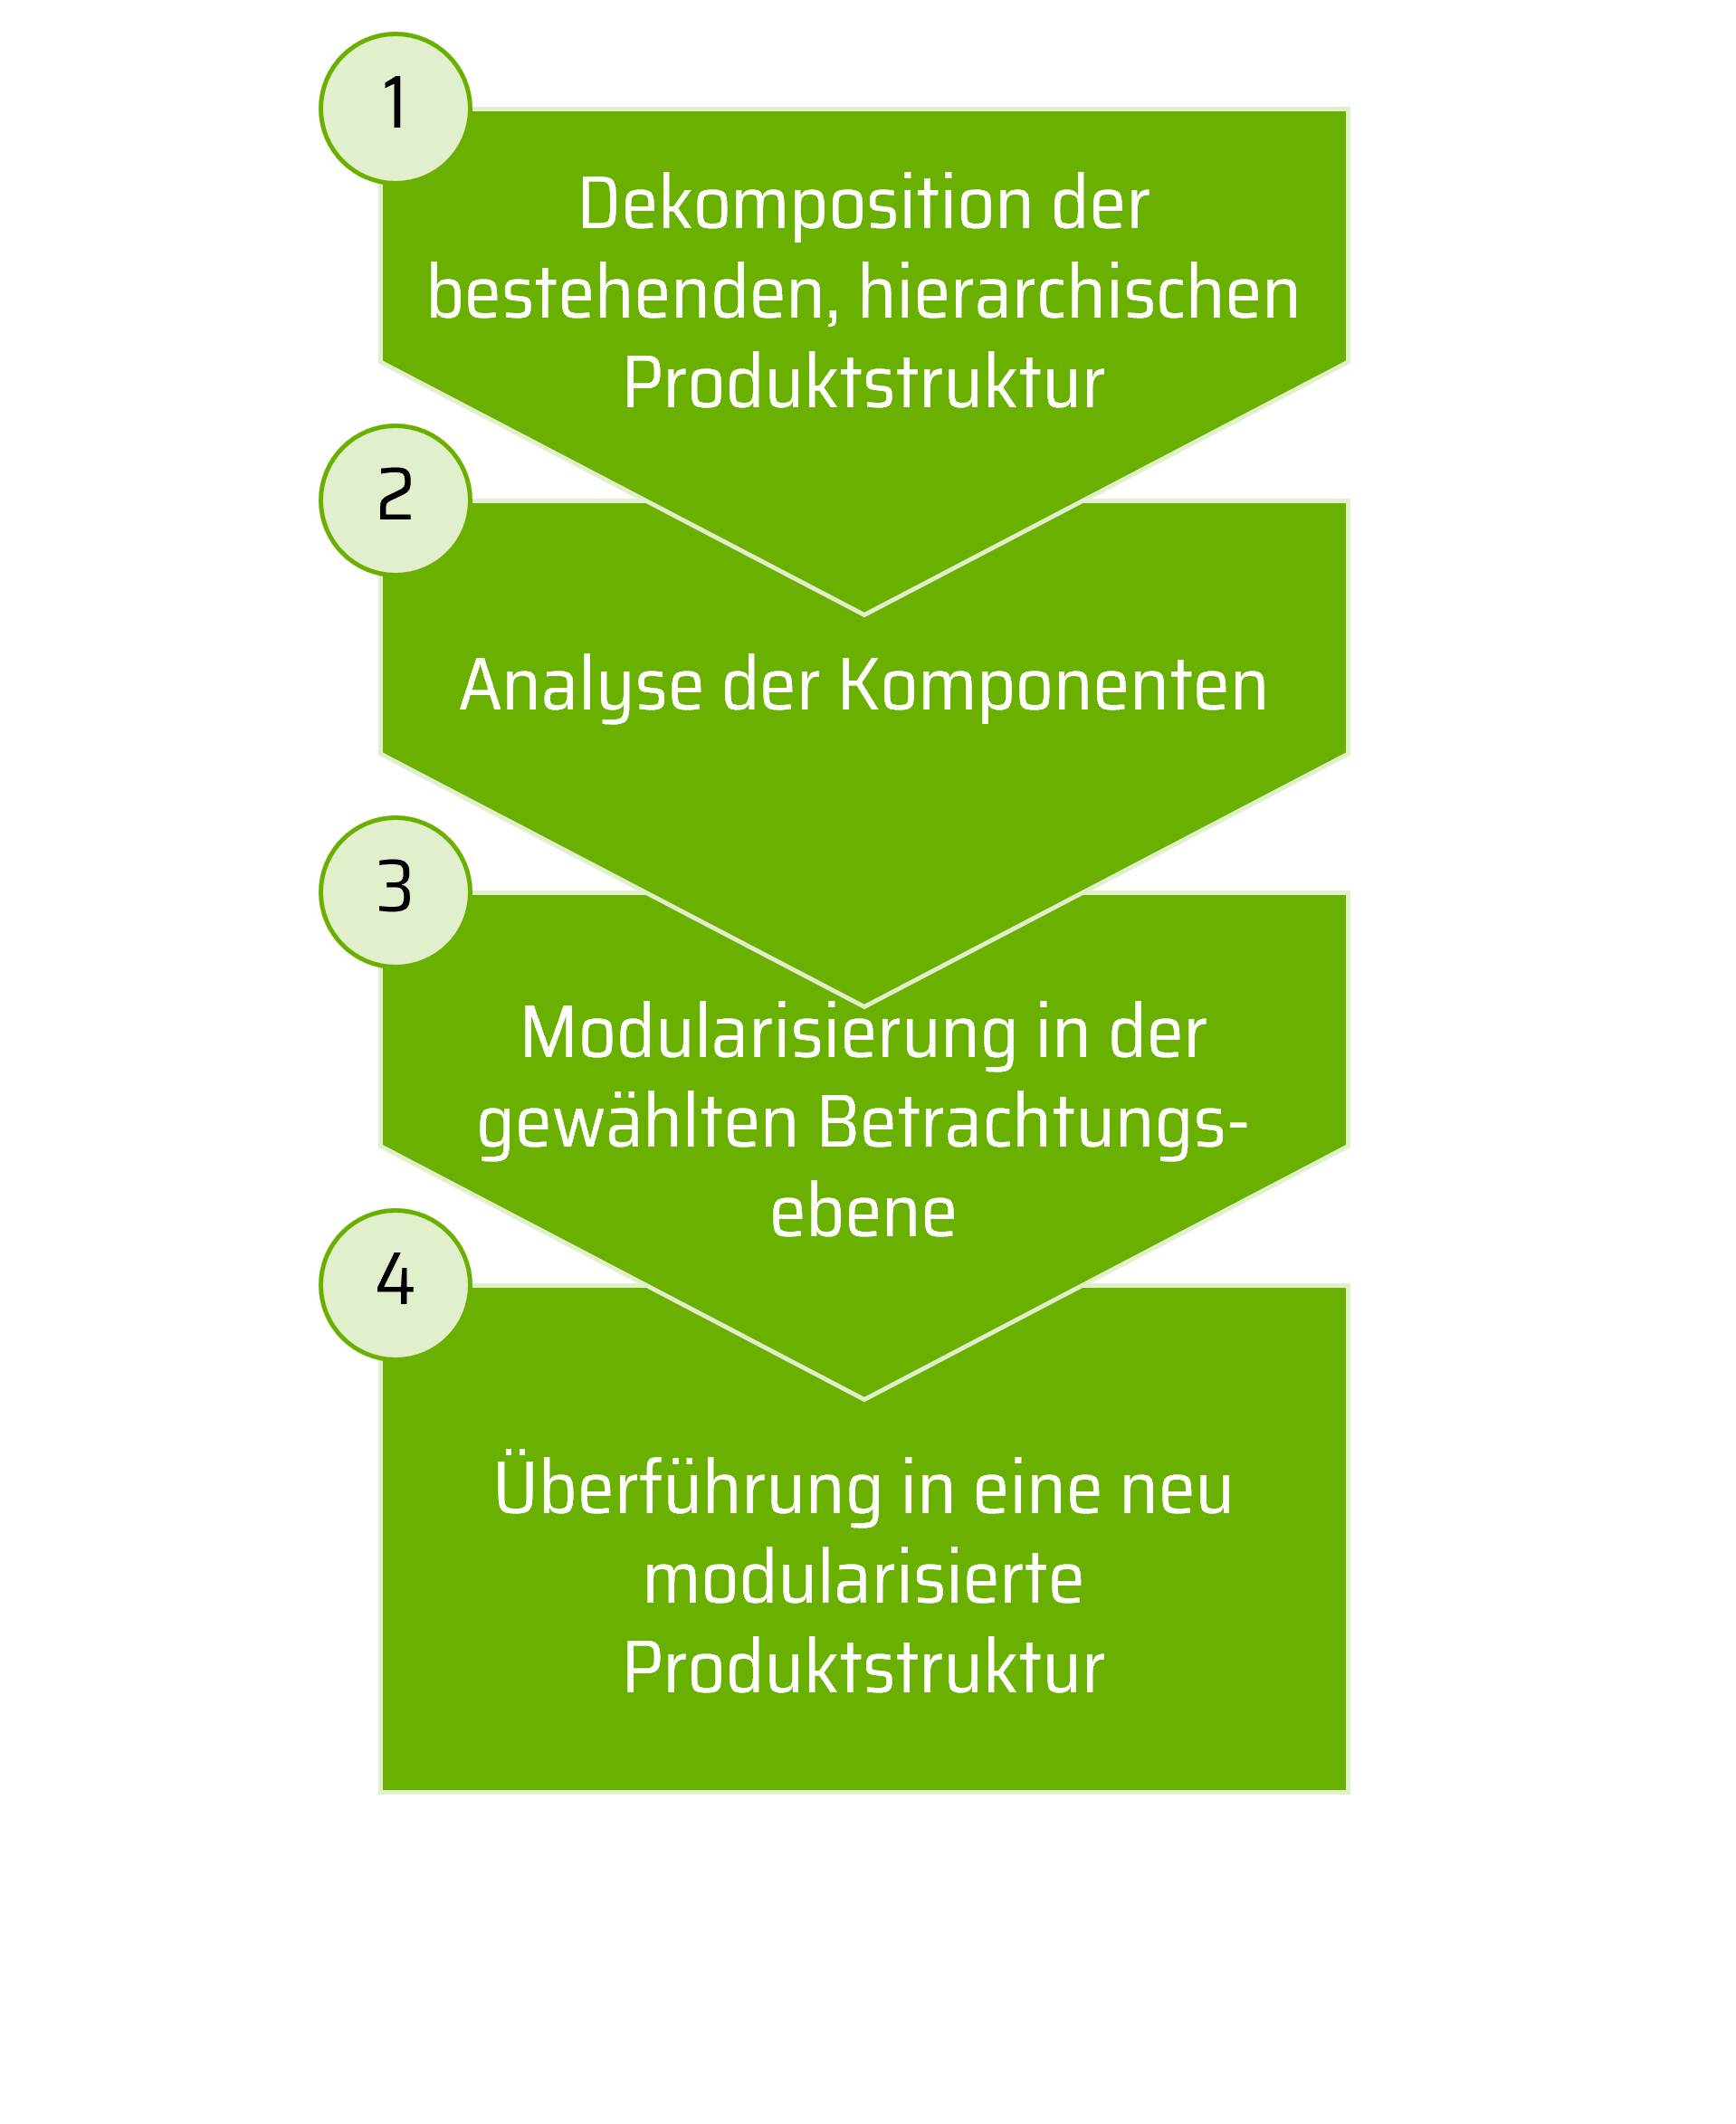 Das Bild zeigt Schritte der Methode "Modulare Produktstrukturen".